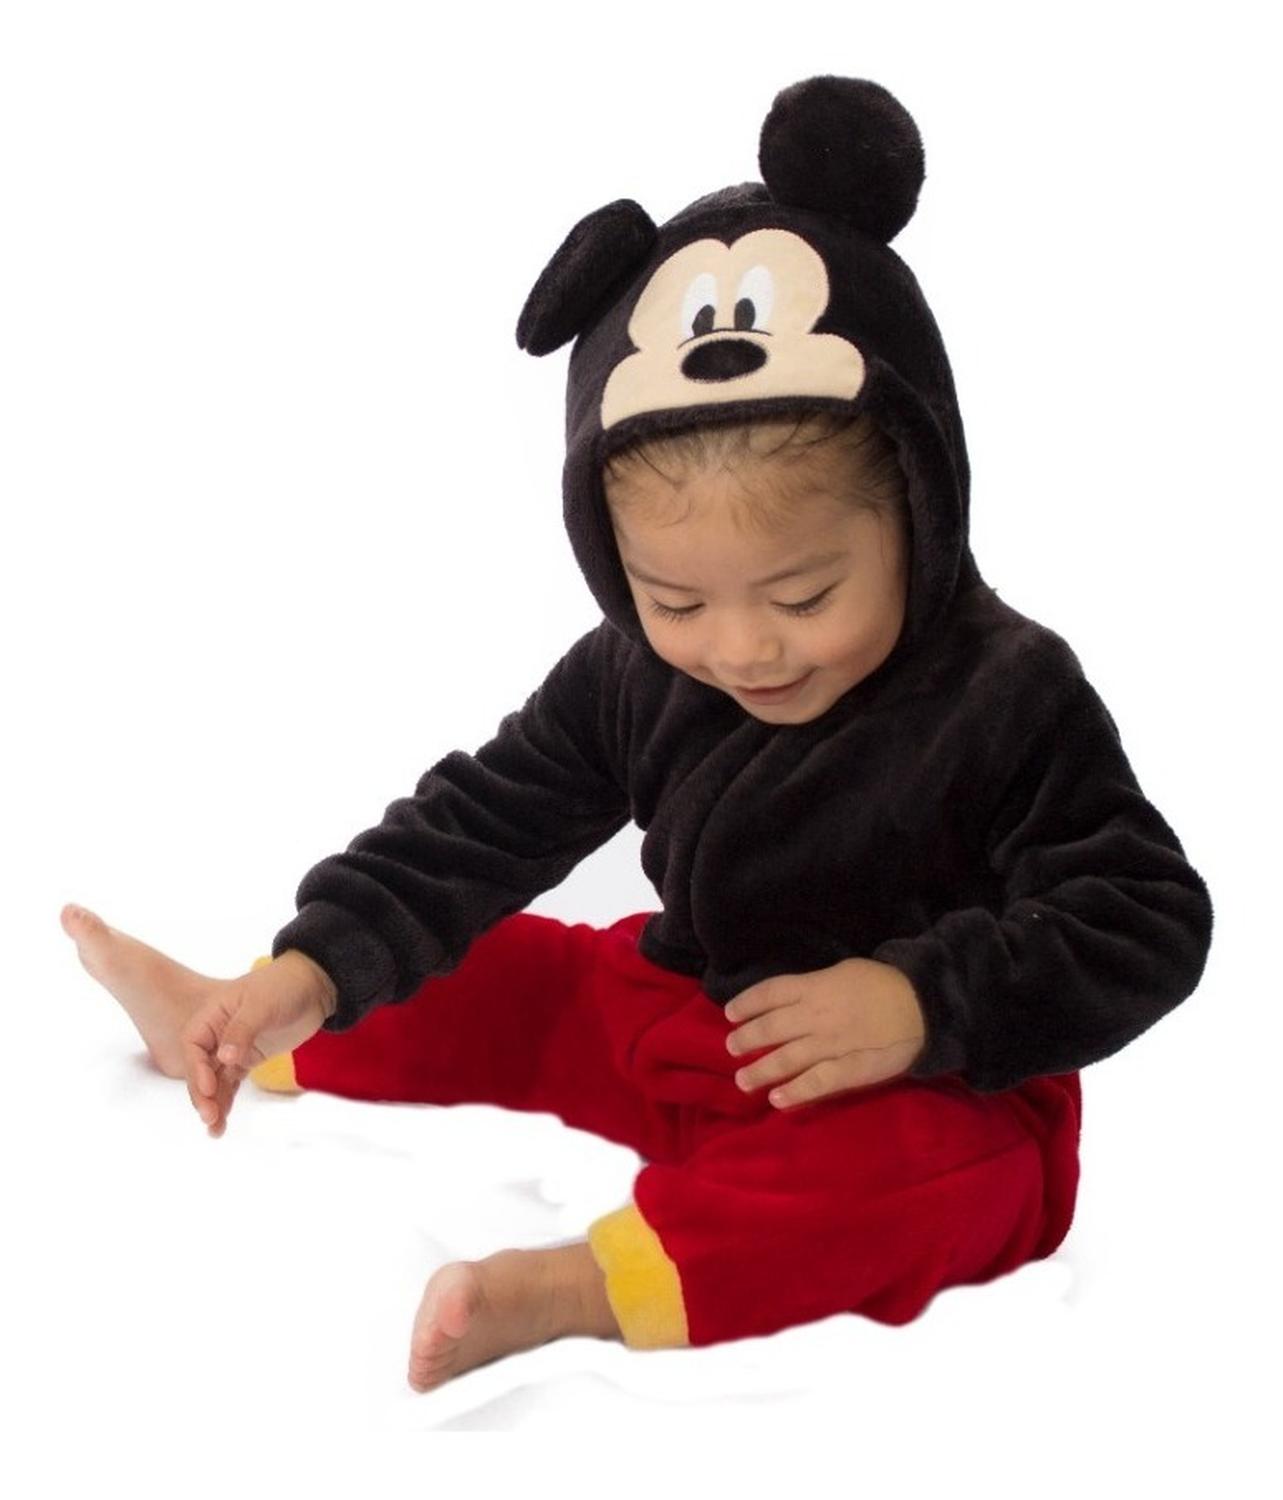 Kit 2 Mamelucos Disney para Niño con Gorro Bordado Mickey y Pluto